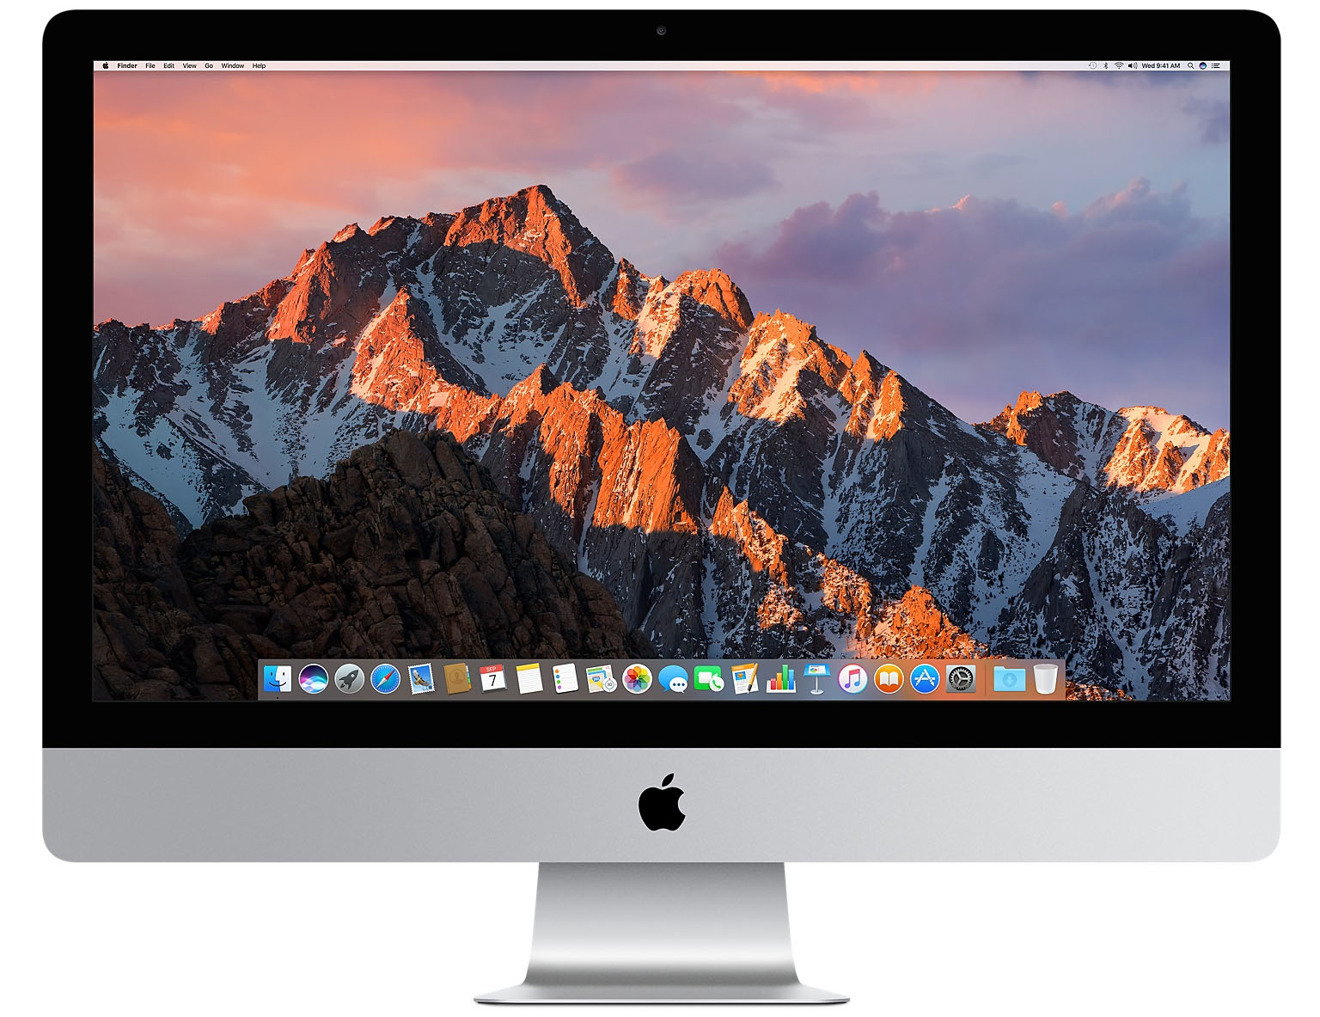 2017 27 inch iMac 5K all in one desktop